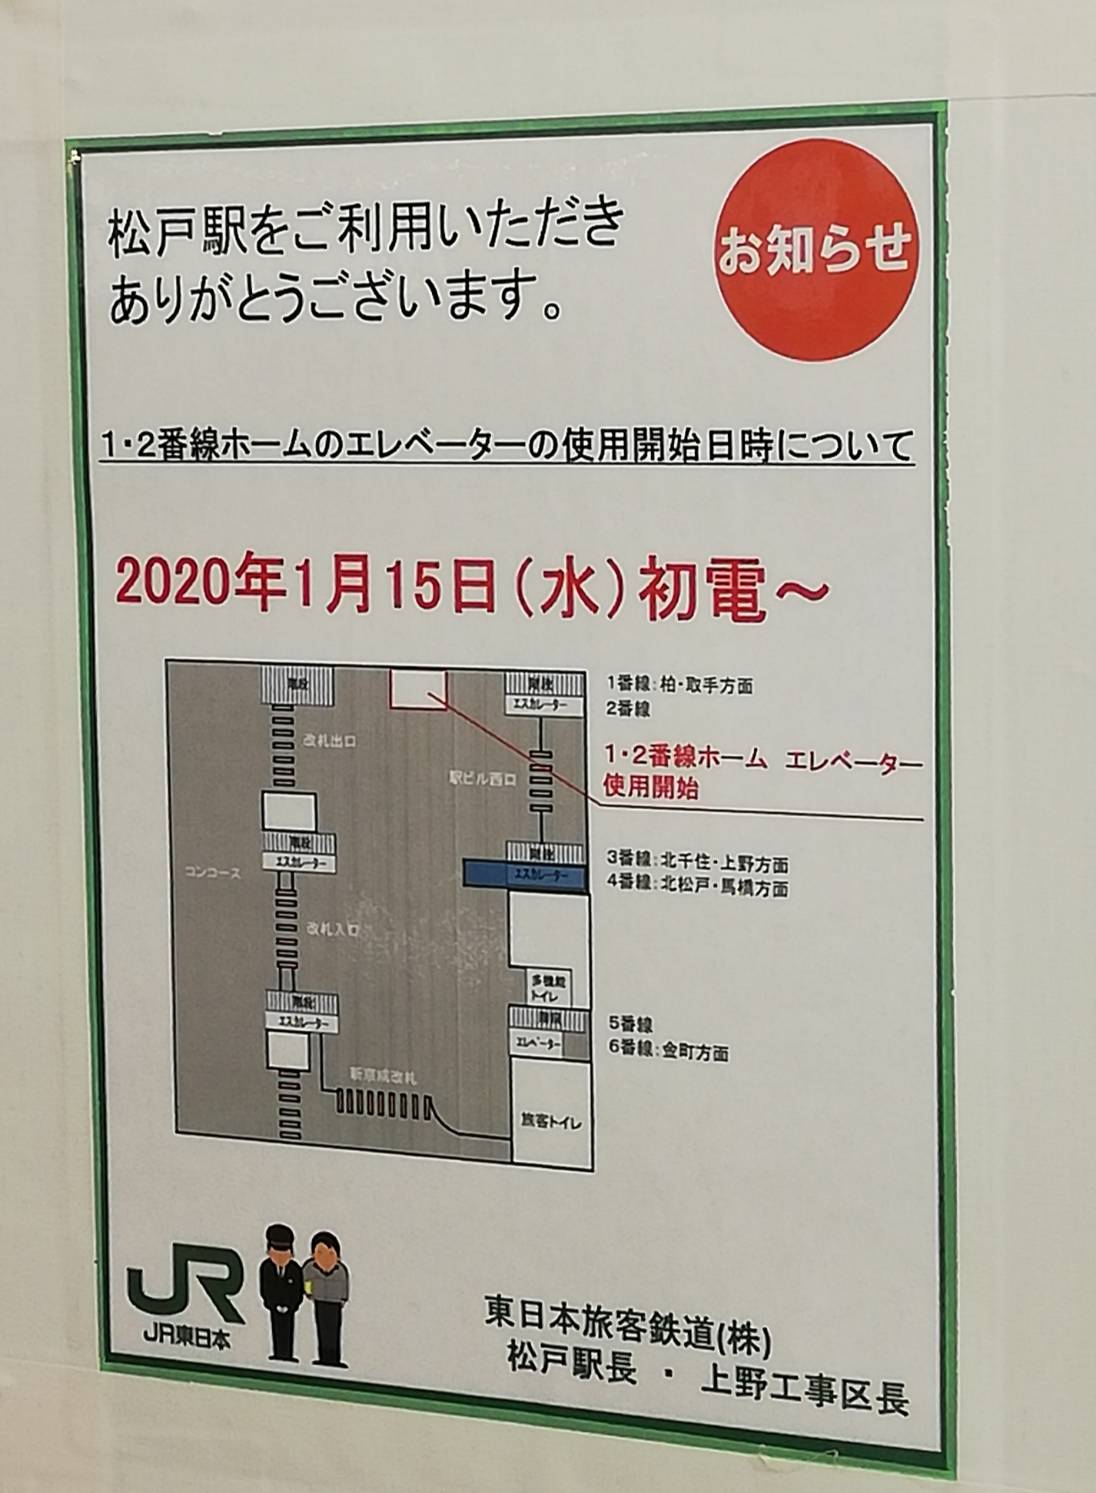 松戸駅エレベーター1番線2番線開始